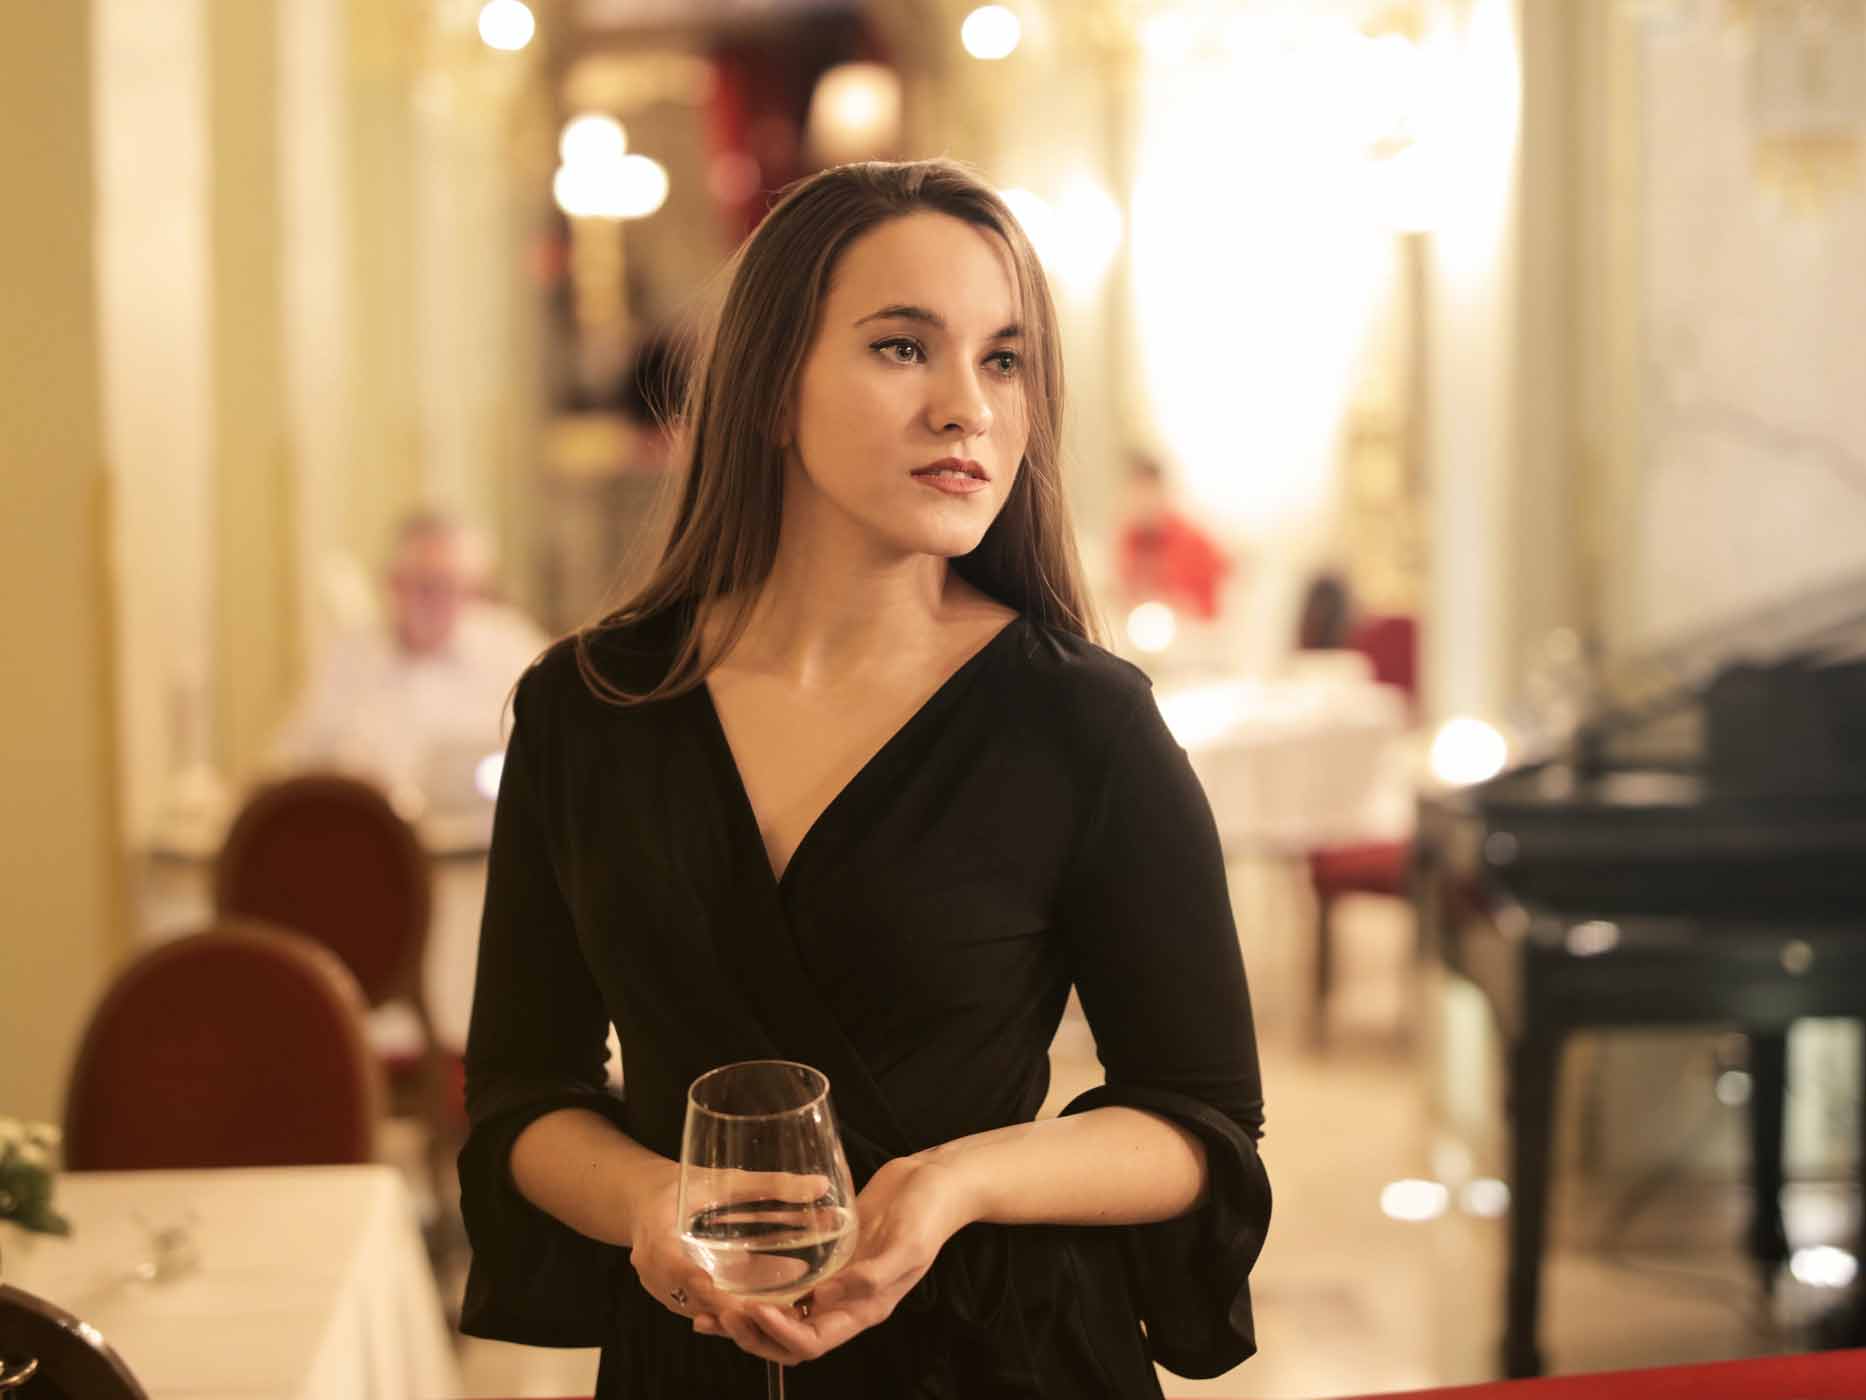 Frau trägt elegantes, schwarzes Kleid in einem schicken Restaurant und hält dabei ein Glas Wein in der Hand